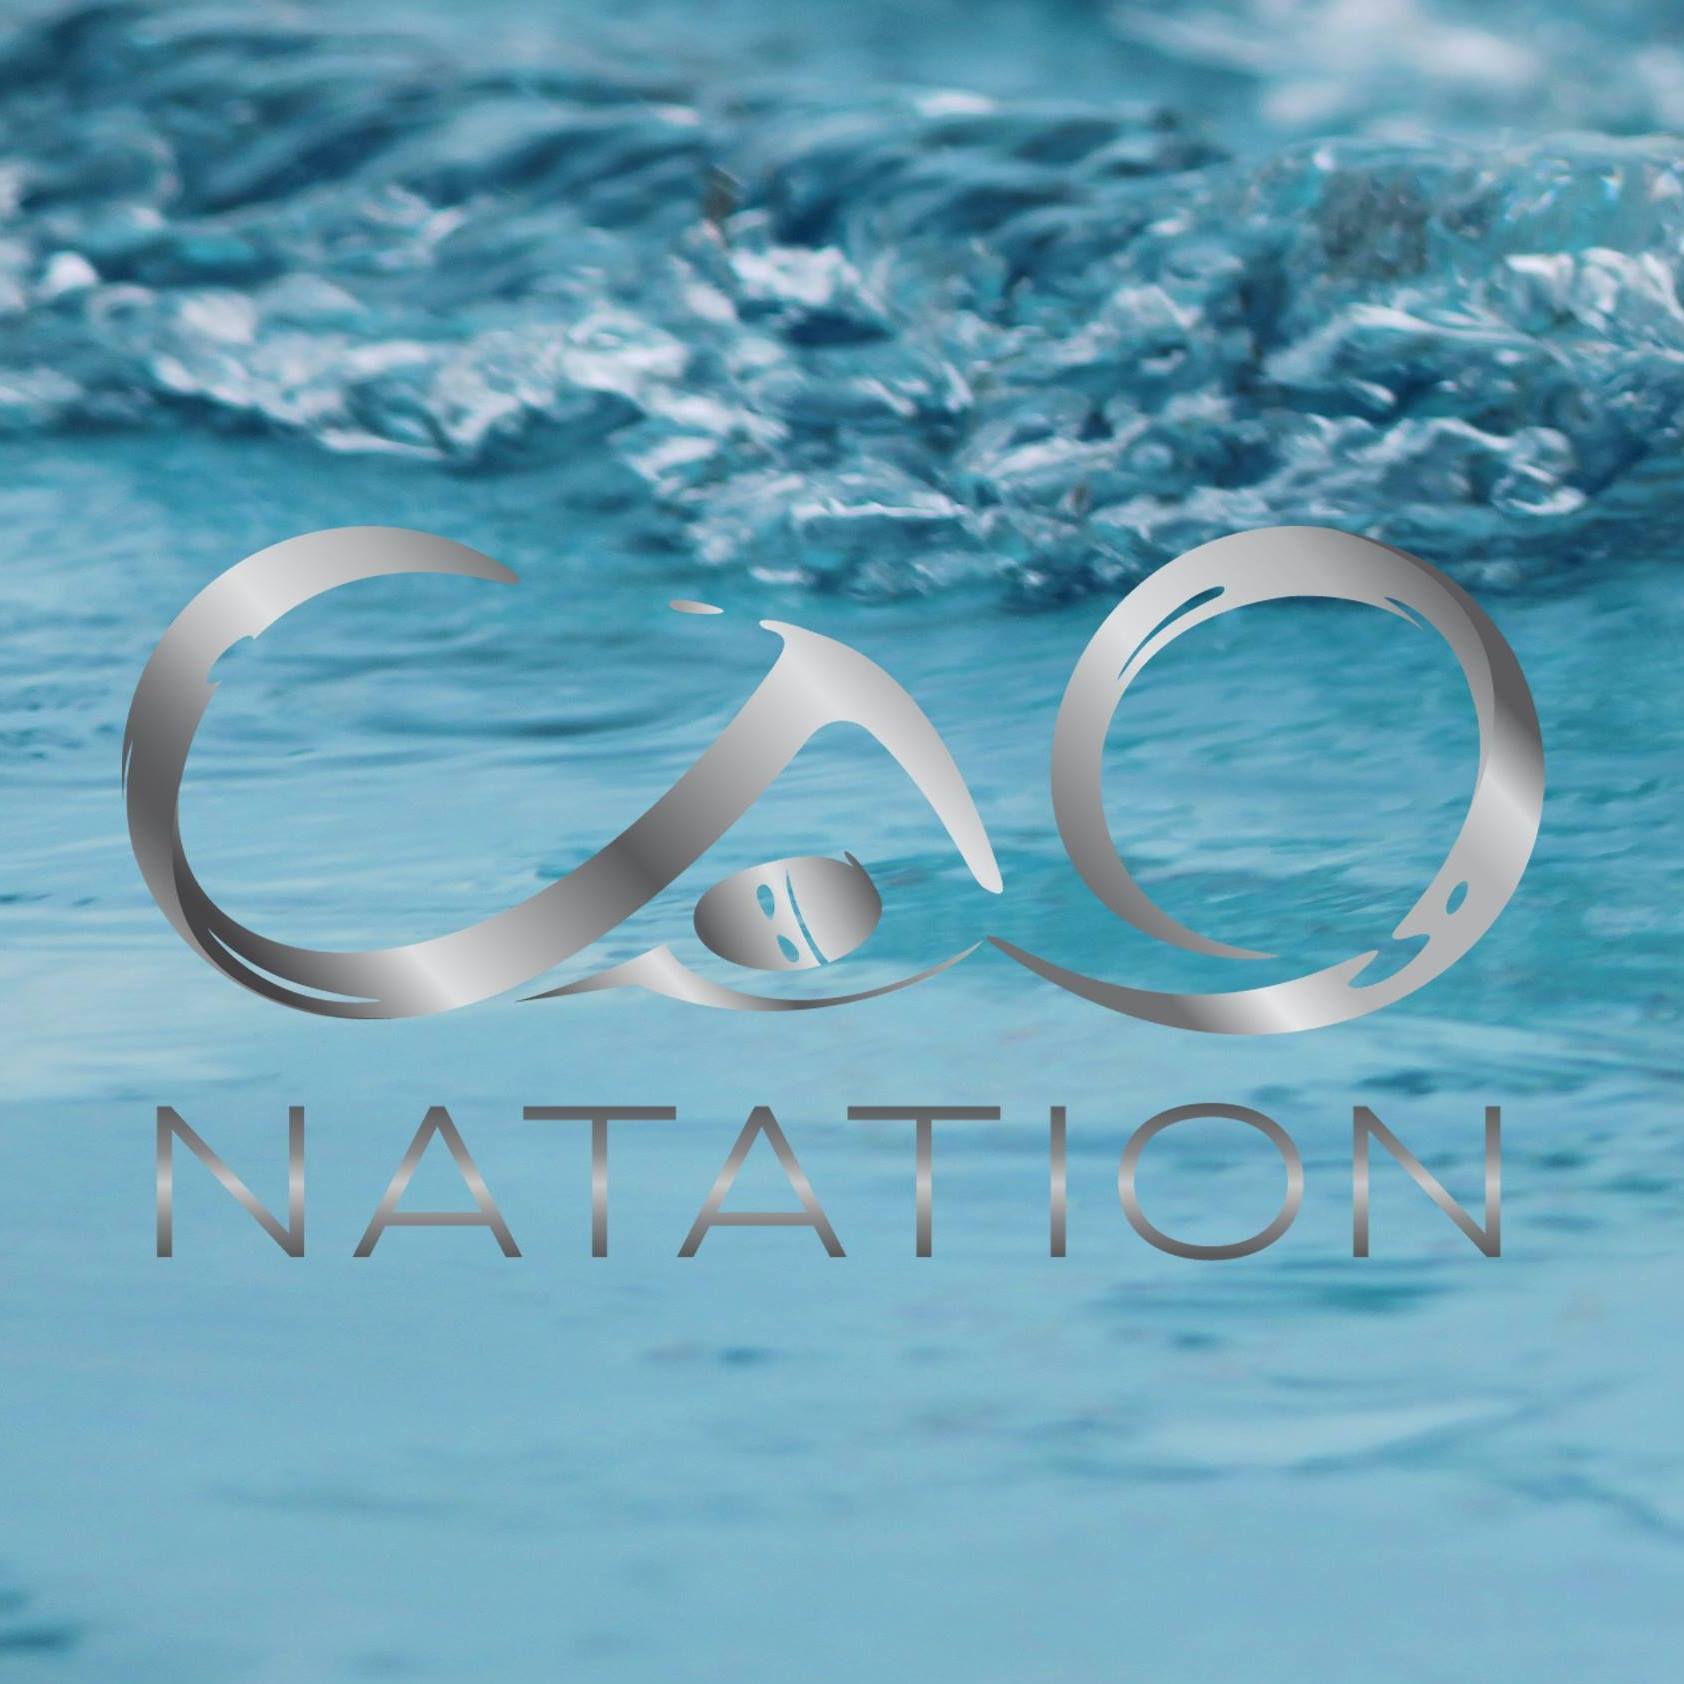 CAO Natation